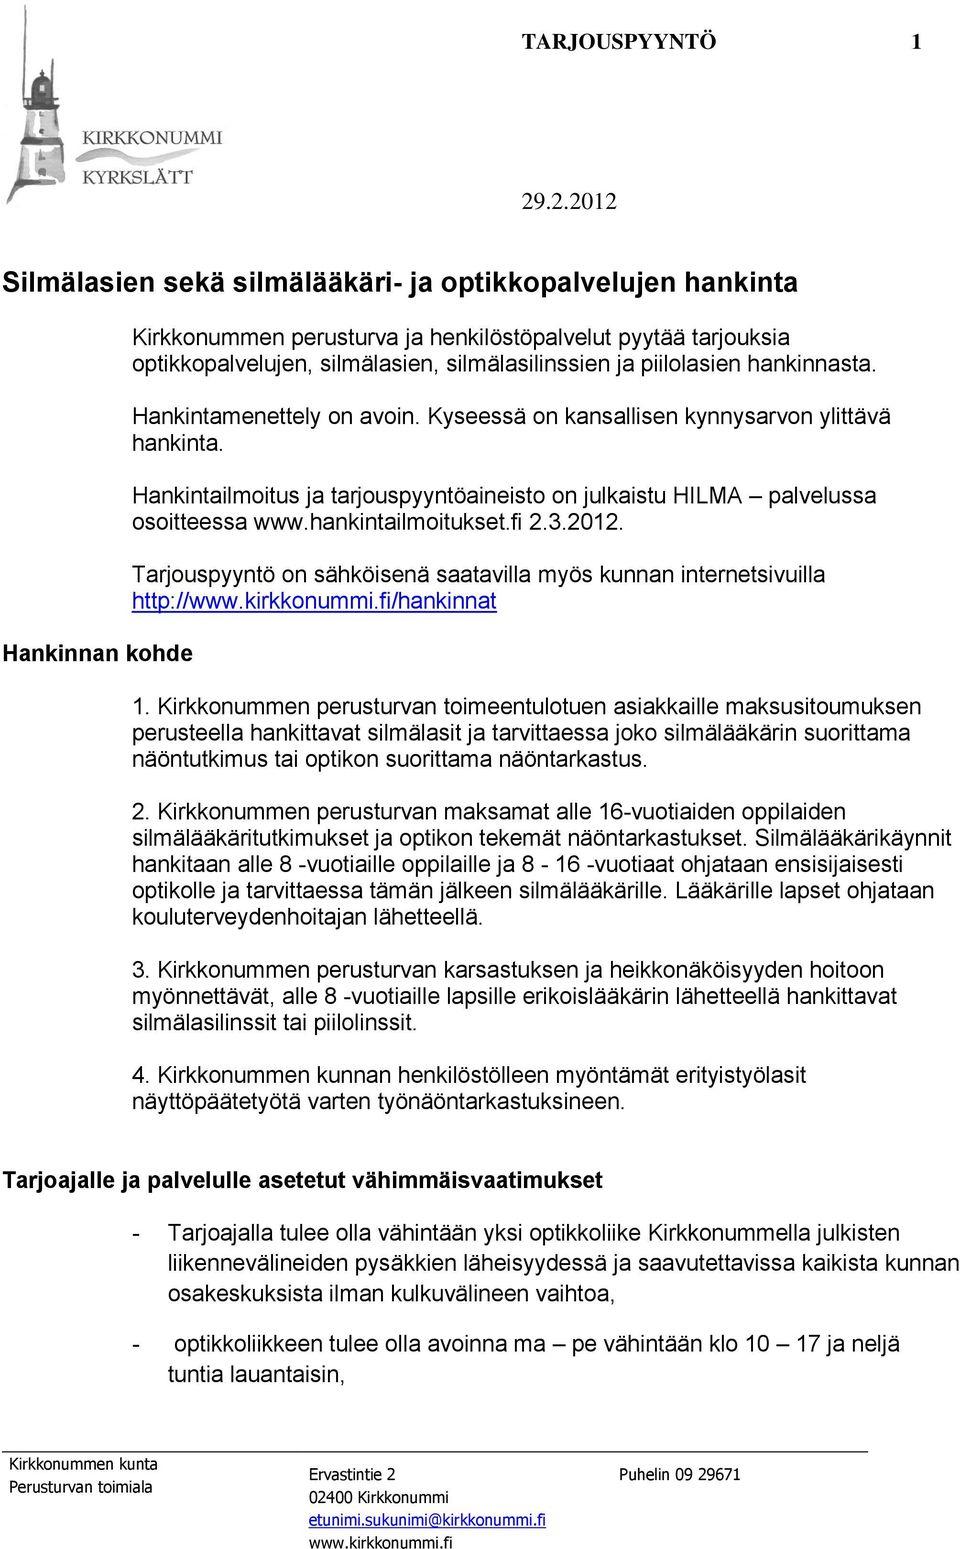 Hankintailmoitus ja tarjouspyyntöaineisto on julkaistu HILMA palvelussa osoitteessa www.hankintailmoitukset.fi 2.3.2012.